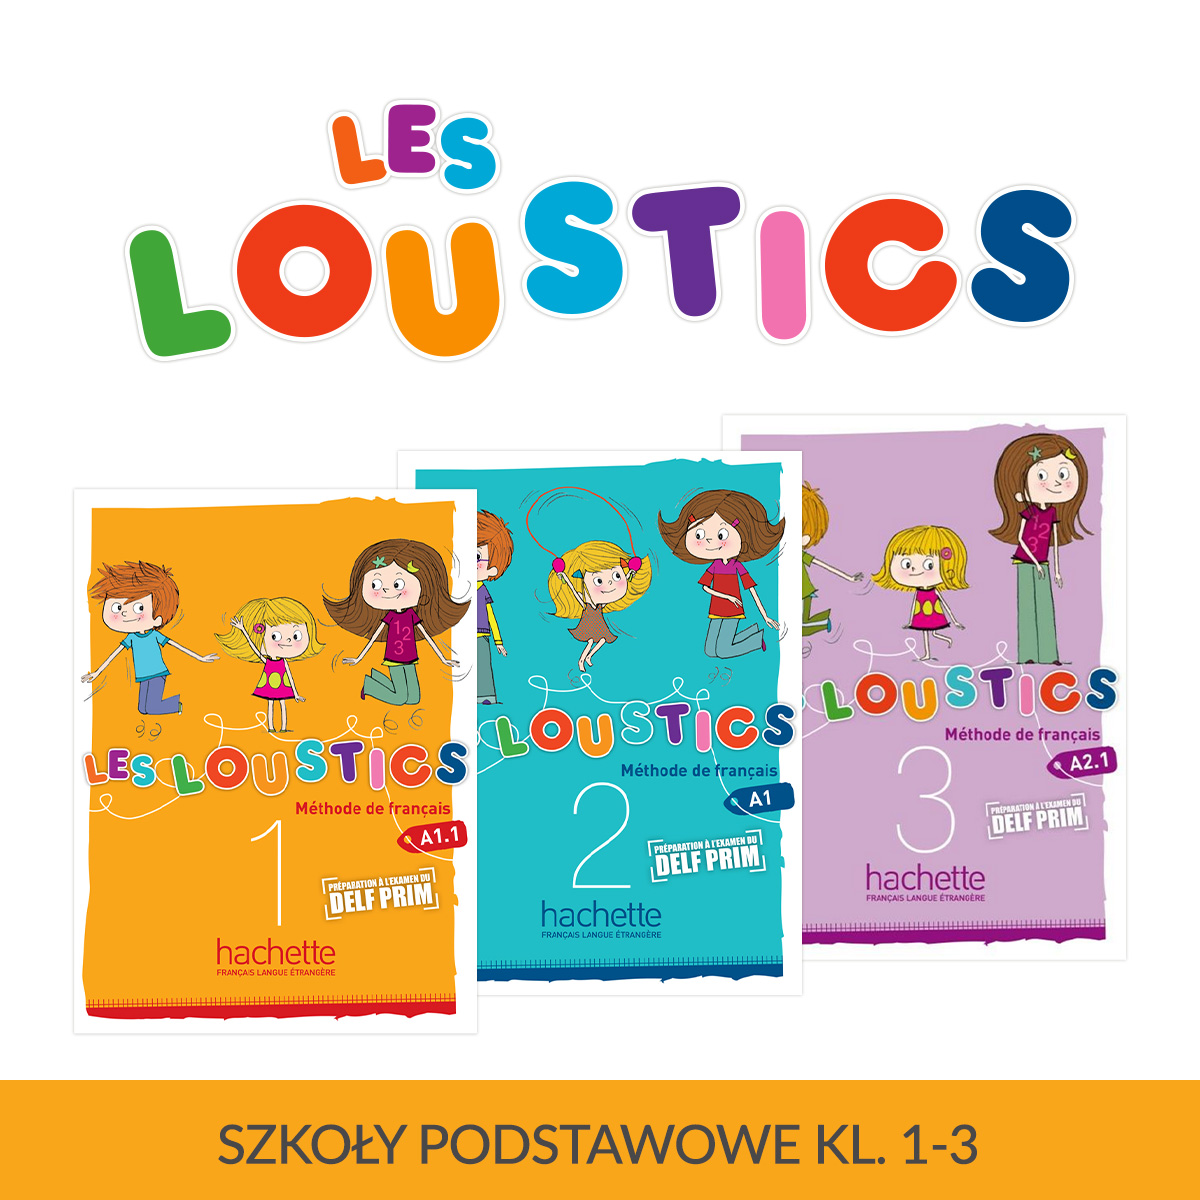 Les Loustics seria wydawnicza